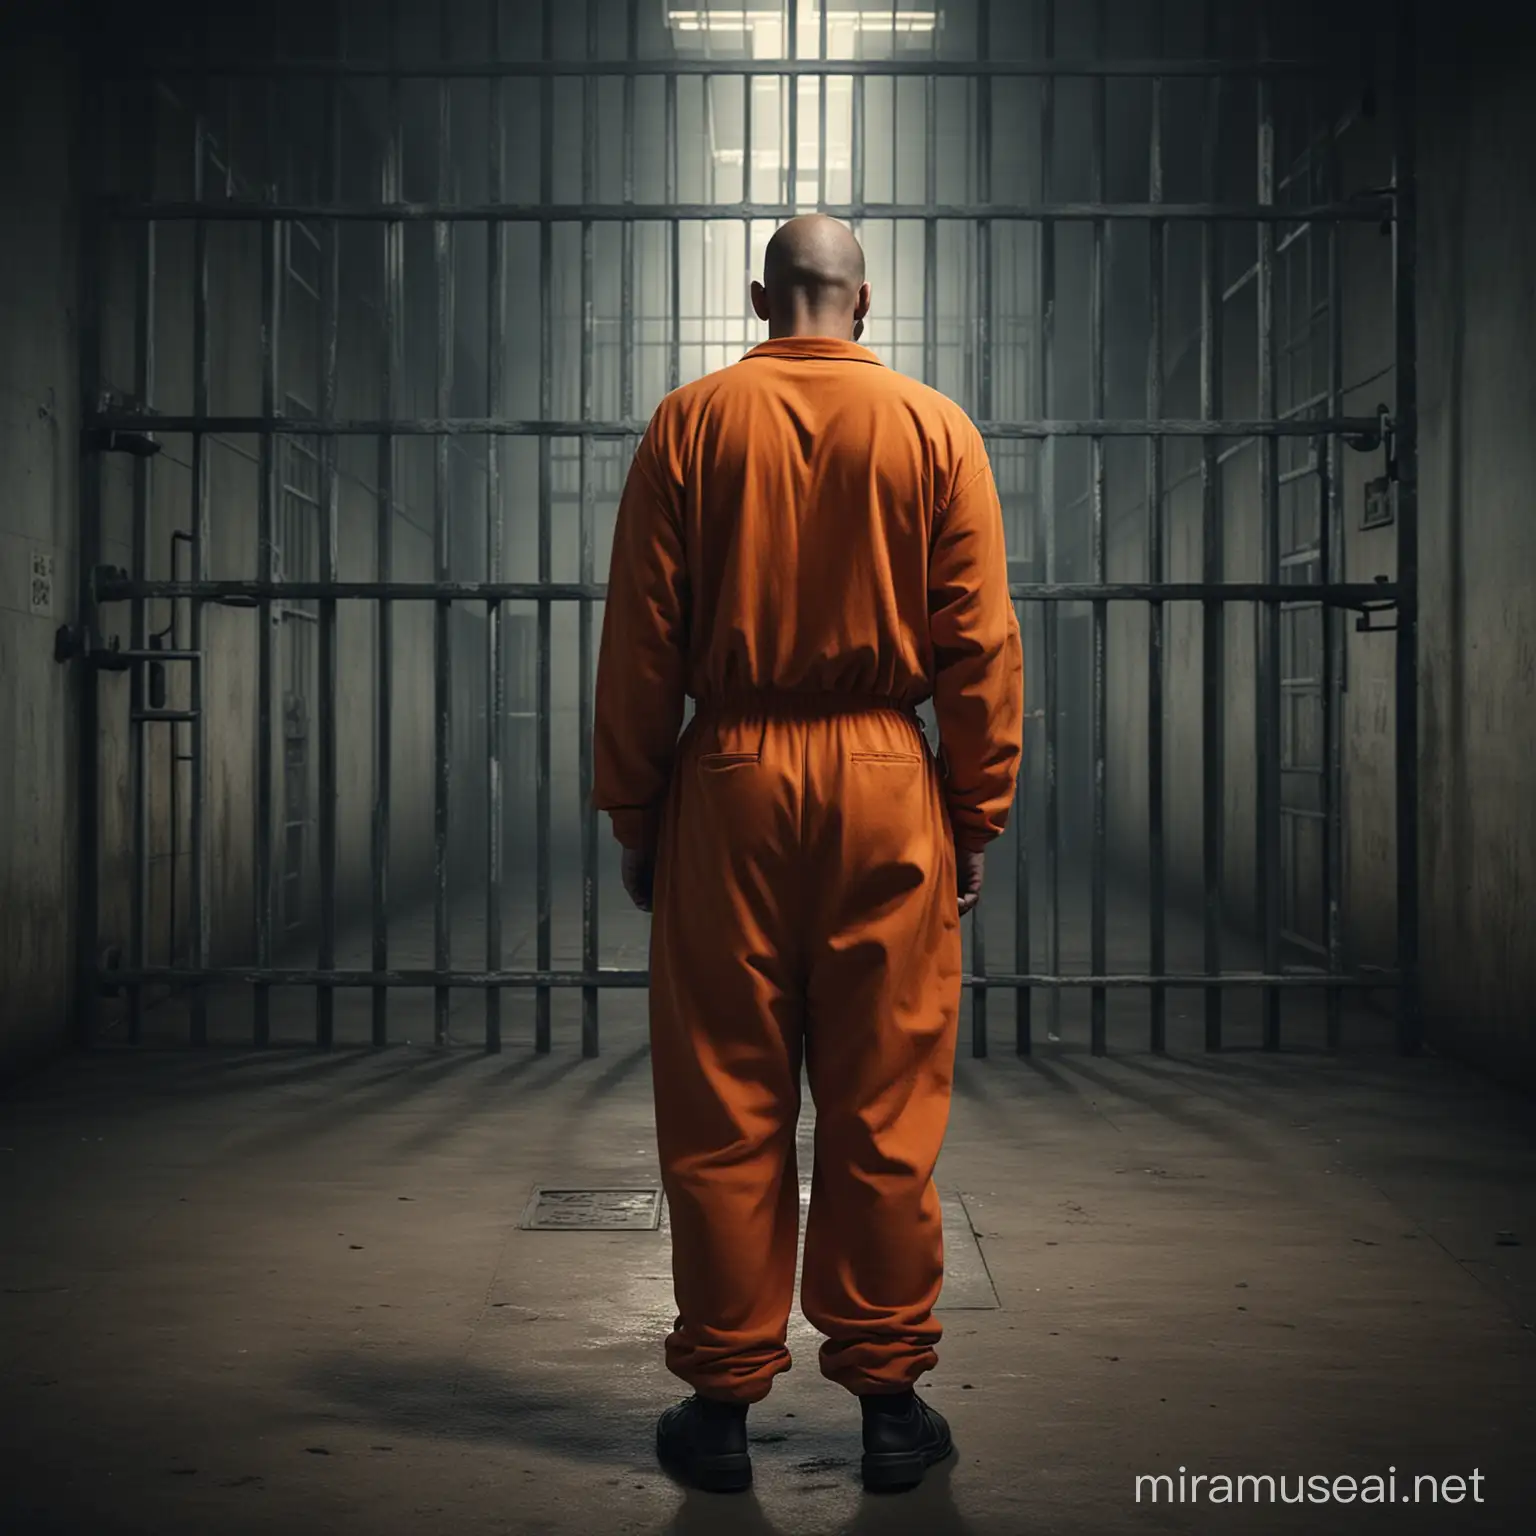 Prisoner in Orange Jumpsuit Dark Jail Scene with Foreground and Background Depth